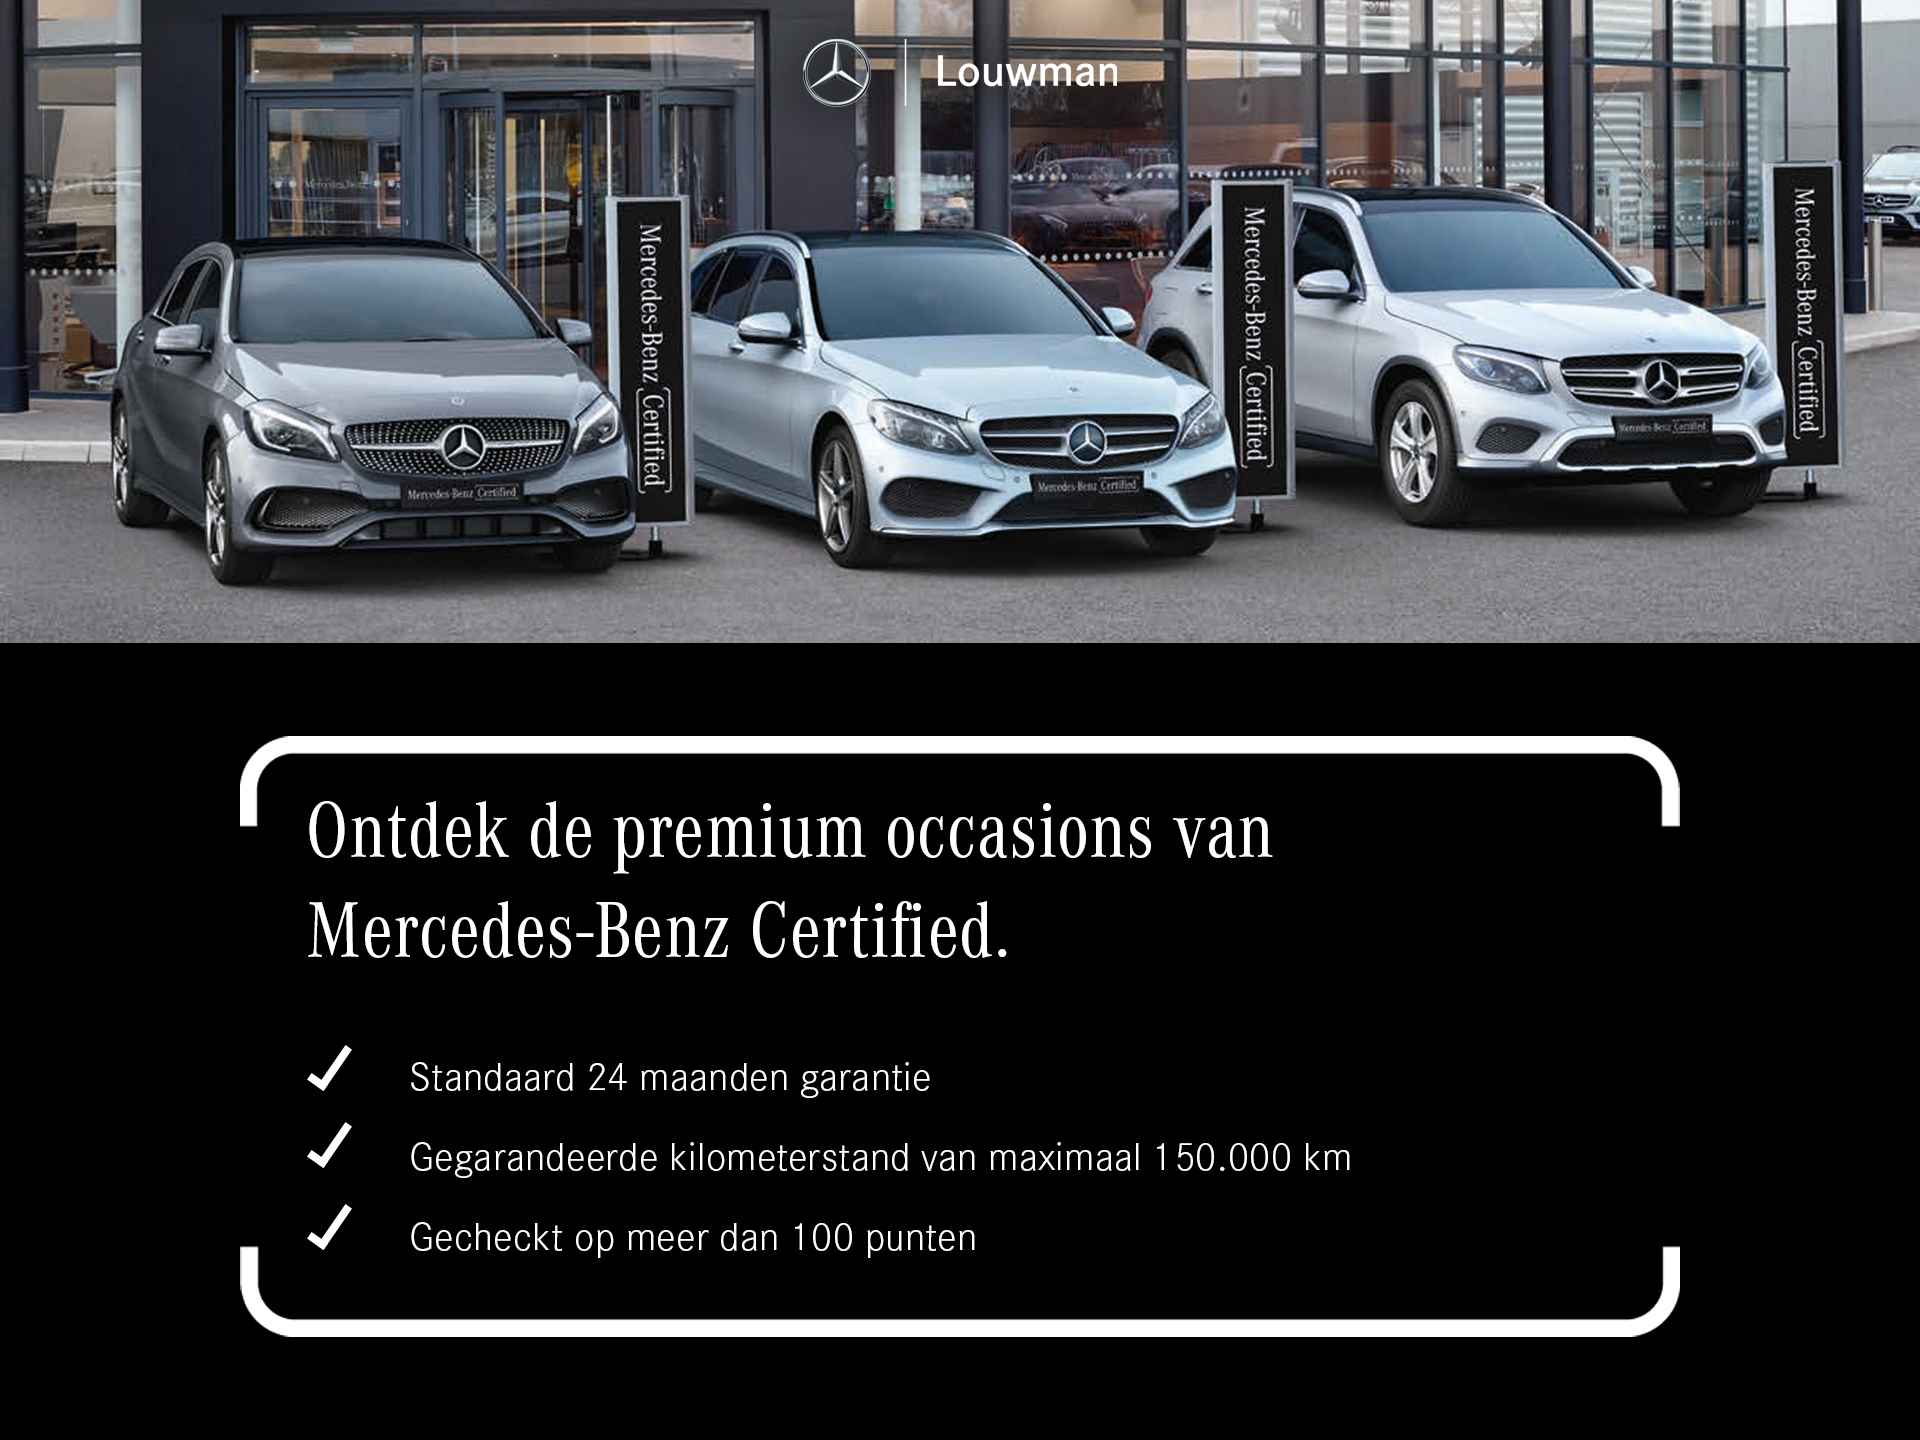 Mercedes-Benz B-Klasse 180 Luxury Line | Rijassistentiepakket | Panoramaschuifdak | Sfeerverlichting | Apple CarPlay | Android Auto | Inclusief 24 maanden Mercedes-Benz Certified garantie voor Europa. - 37/38